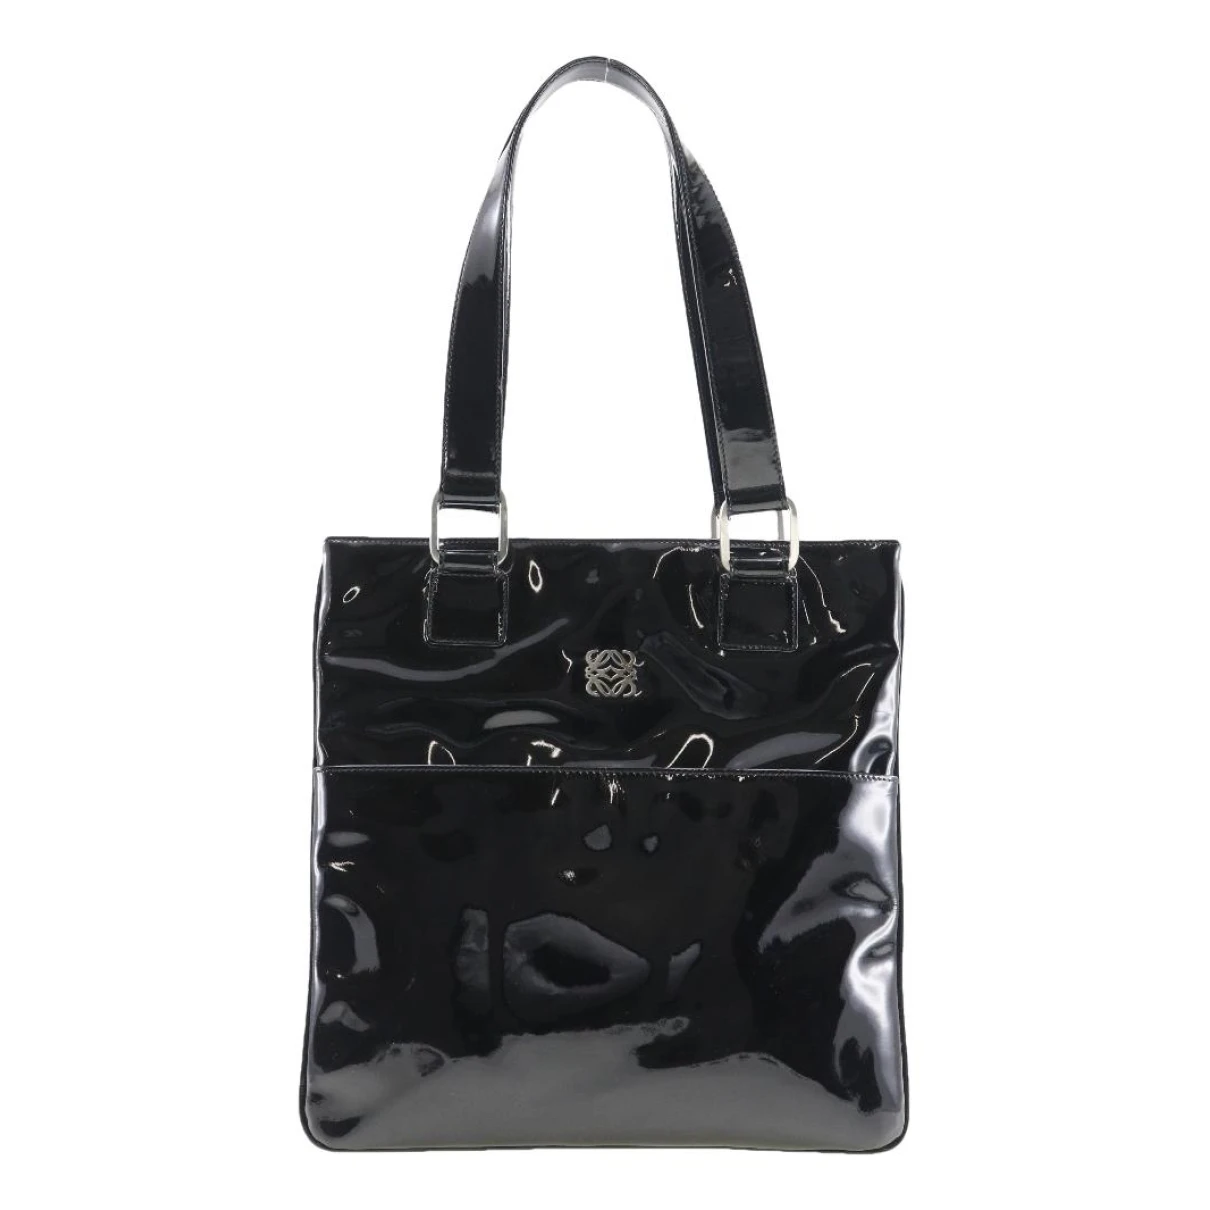 Pre-owned Loewe Patent Leather Handbag In Black